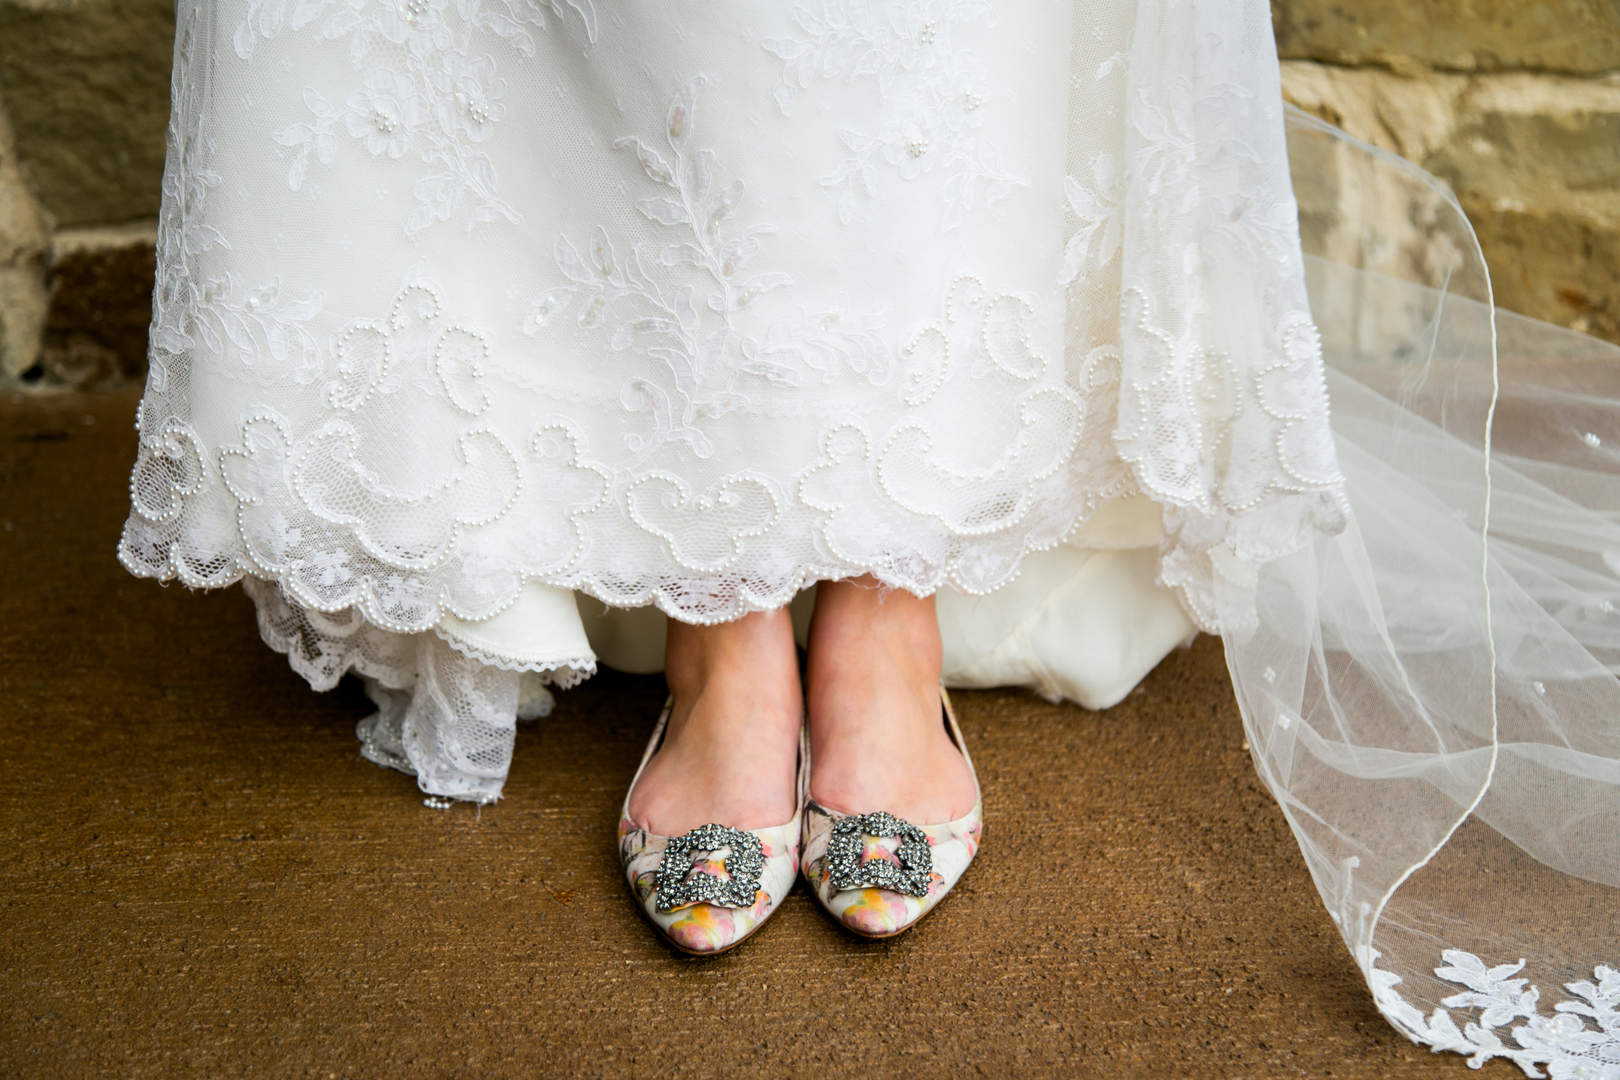 Canyonwood Ridge Wedding, Texas Wedding, Modern Wedding, Manolo Blahnik Hangisi Wedding Shoes